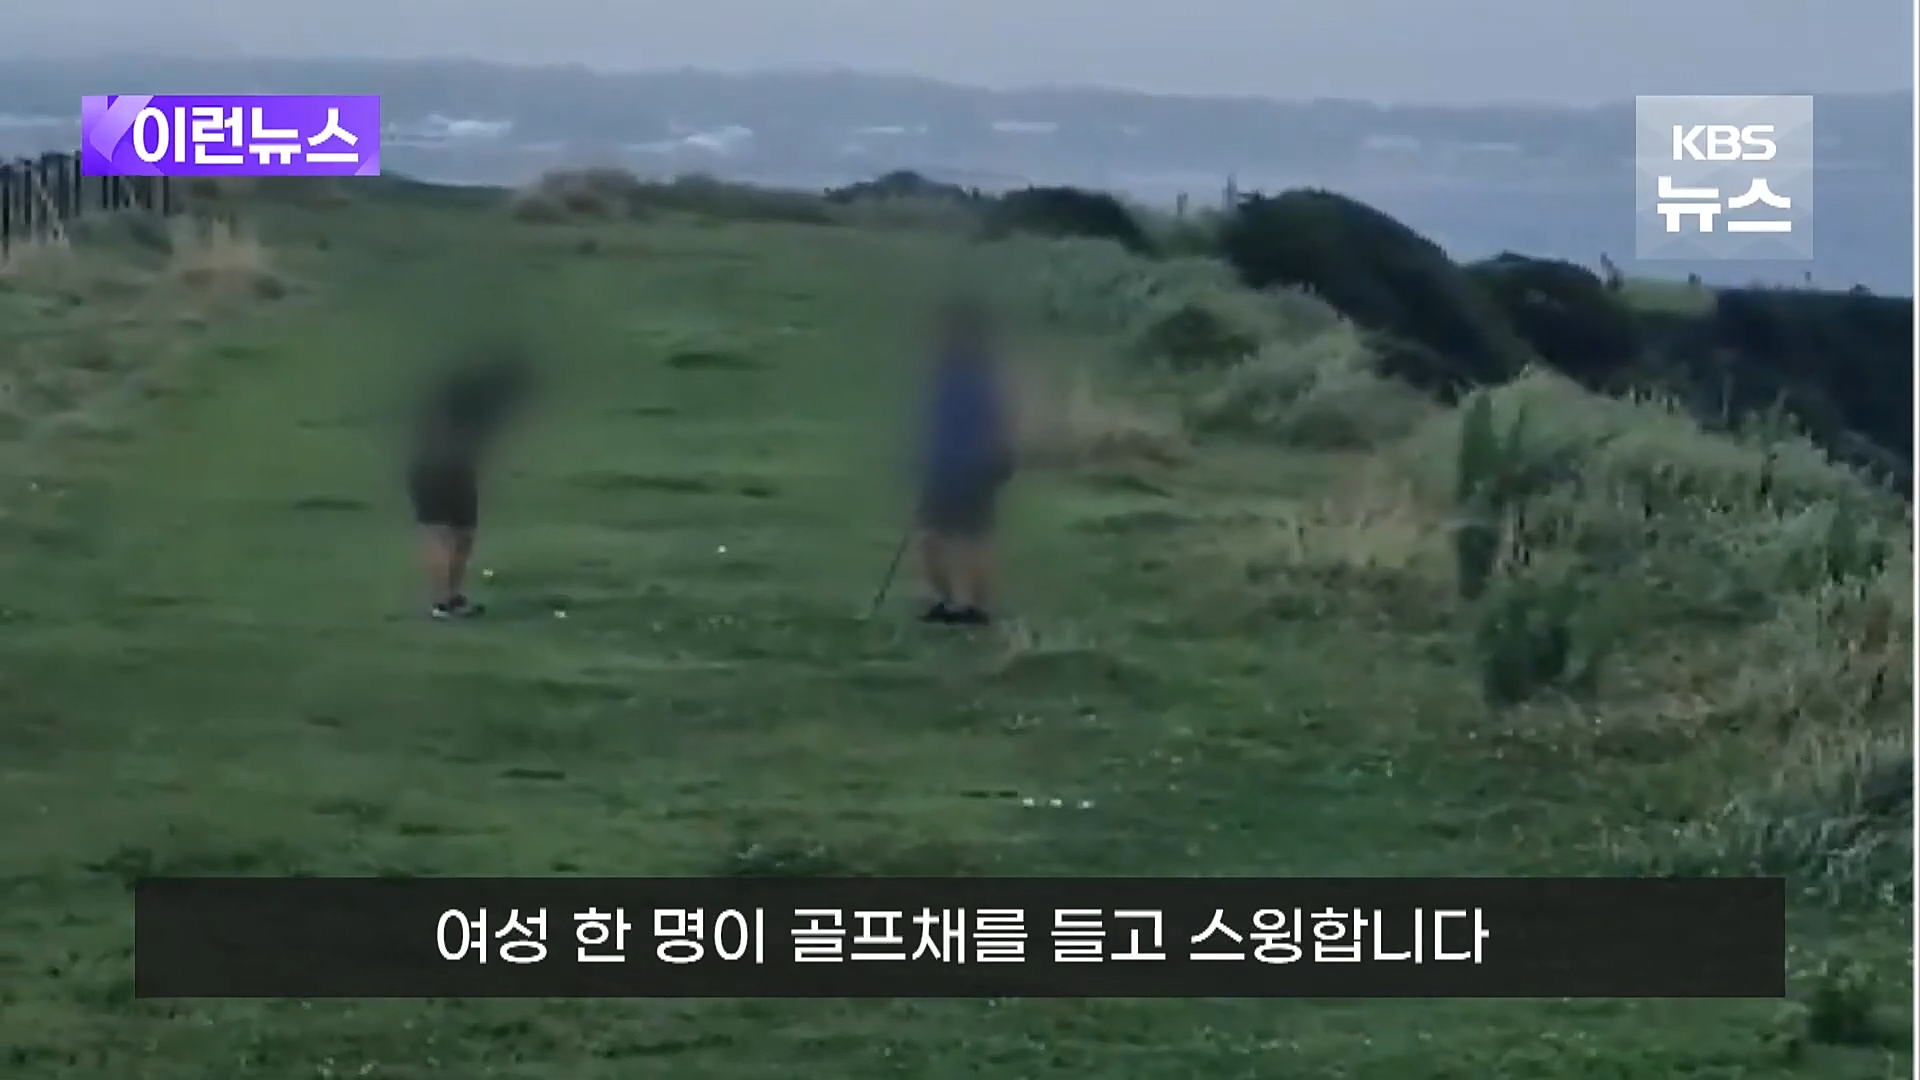 지난 3일 제주도 서귀포시 성산읍의 올레길과 접한 초지에서 남녀 2명이 골프 연습을 하고 있다. 시청자 제공